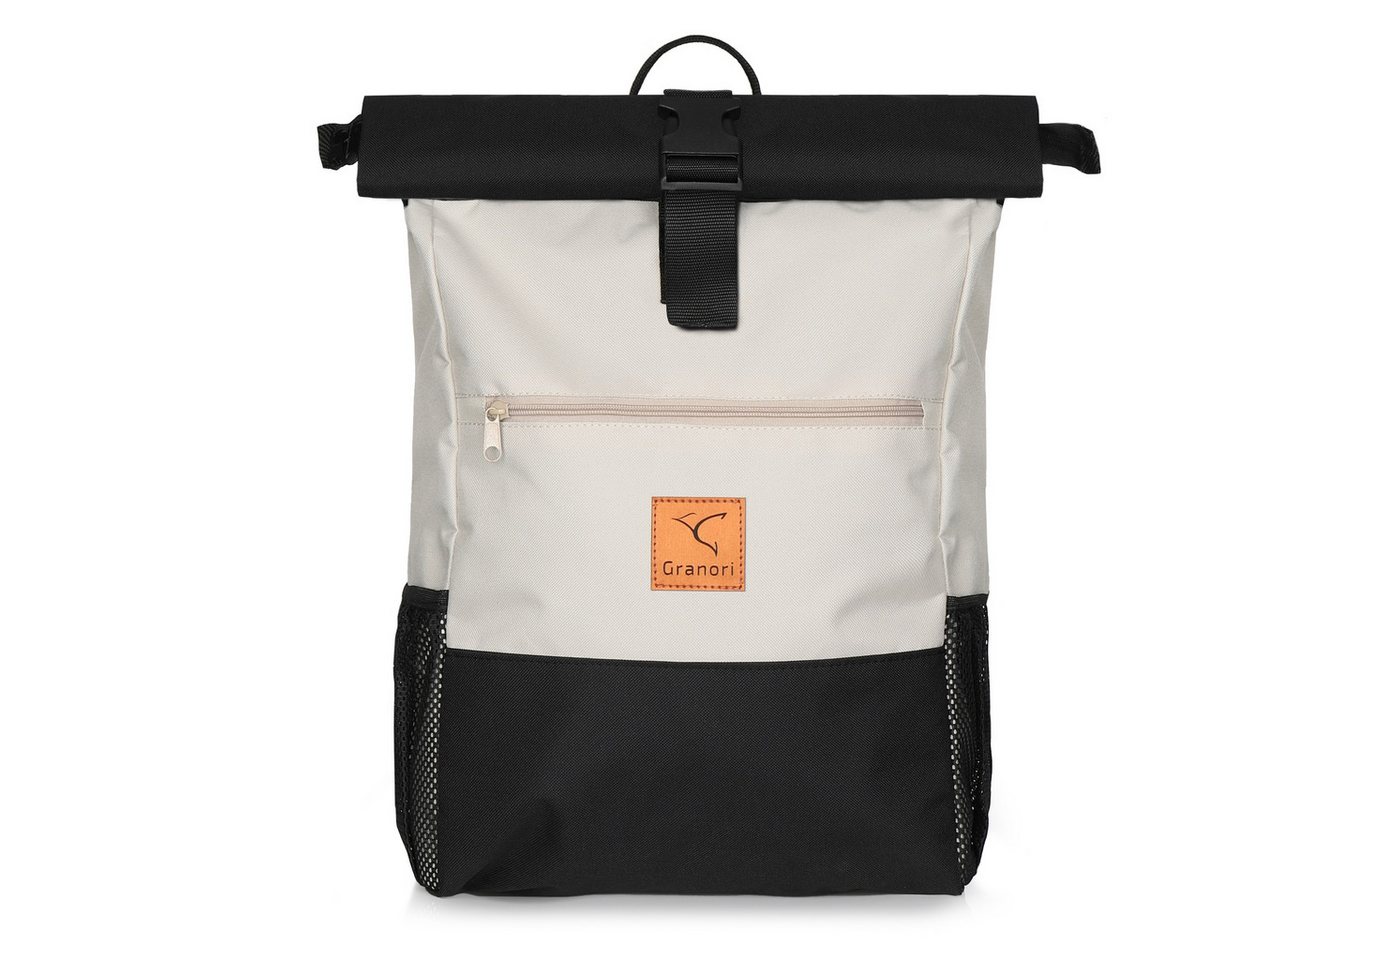 Granori Cityrucksack / Flexibler Freizeit- & Handgepäck Rolltop Rucksack (erweiterbares Volumen, integrierter Brustgurt, leichtgewichtig), mit Getränkehalter, Anti-Diebstahl- & Laptopfach von Granori